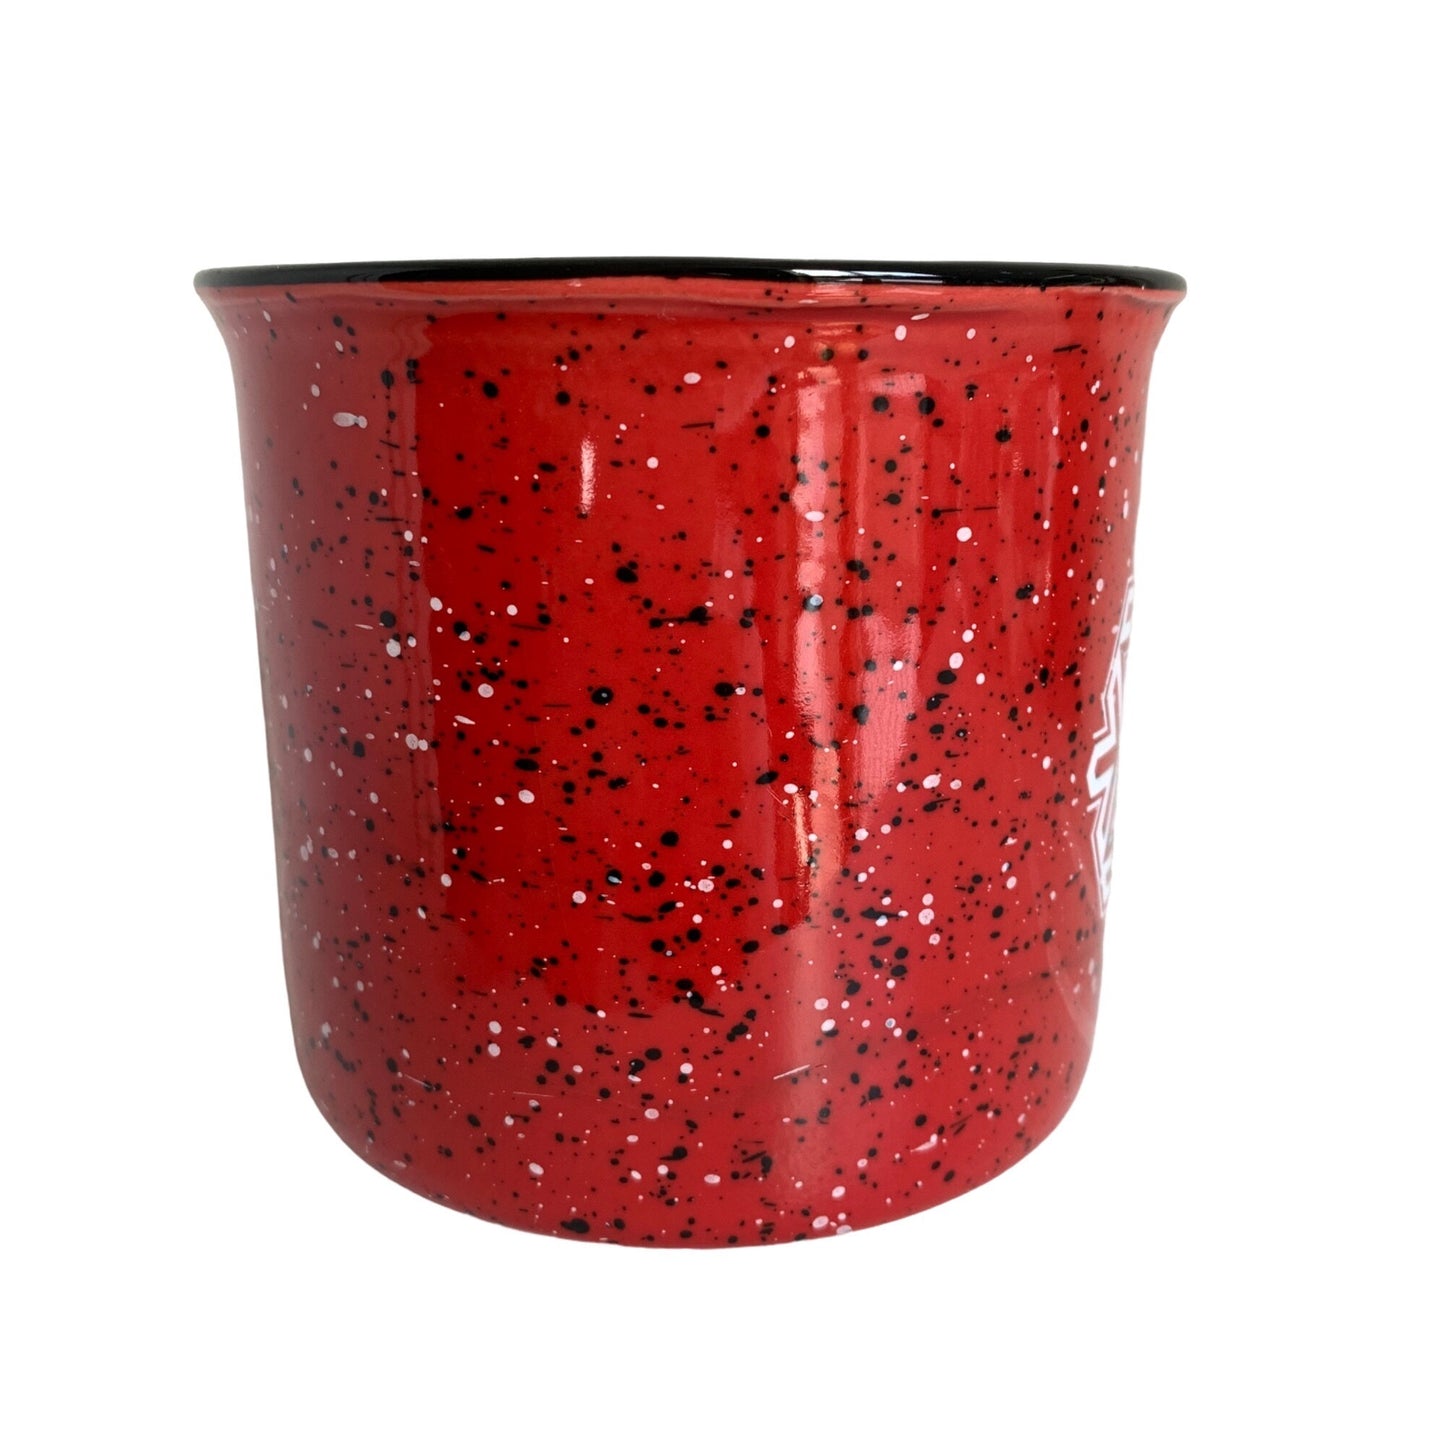 Target Red Speckled Camp Style Ceramic Mug